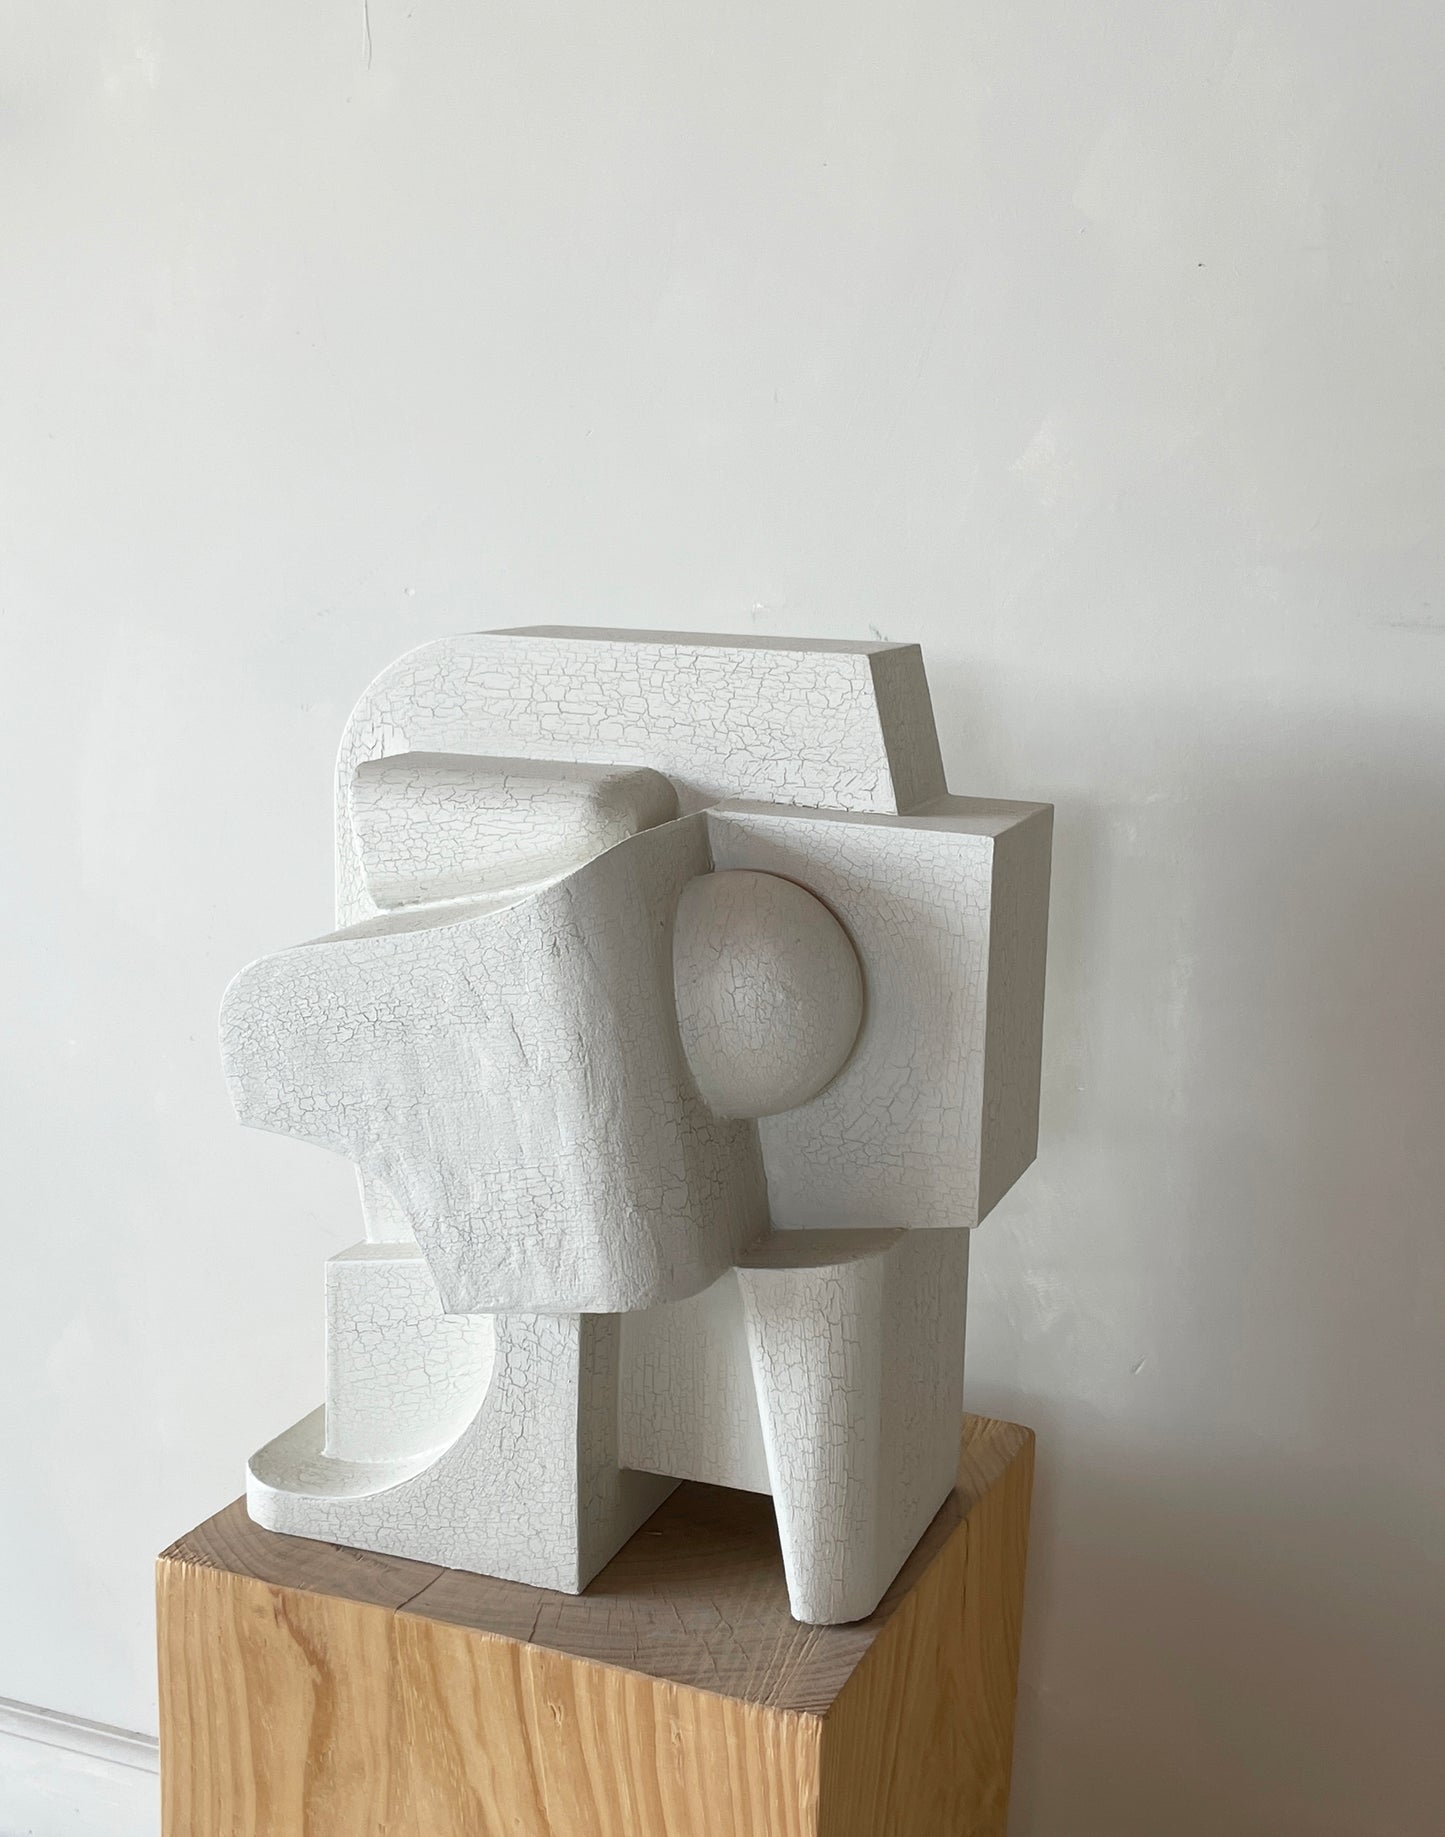 'Mien' Sculpture Crackle. By Edith Beurskens and Ilse van Stoltz